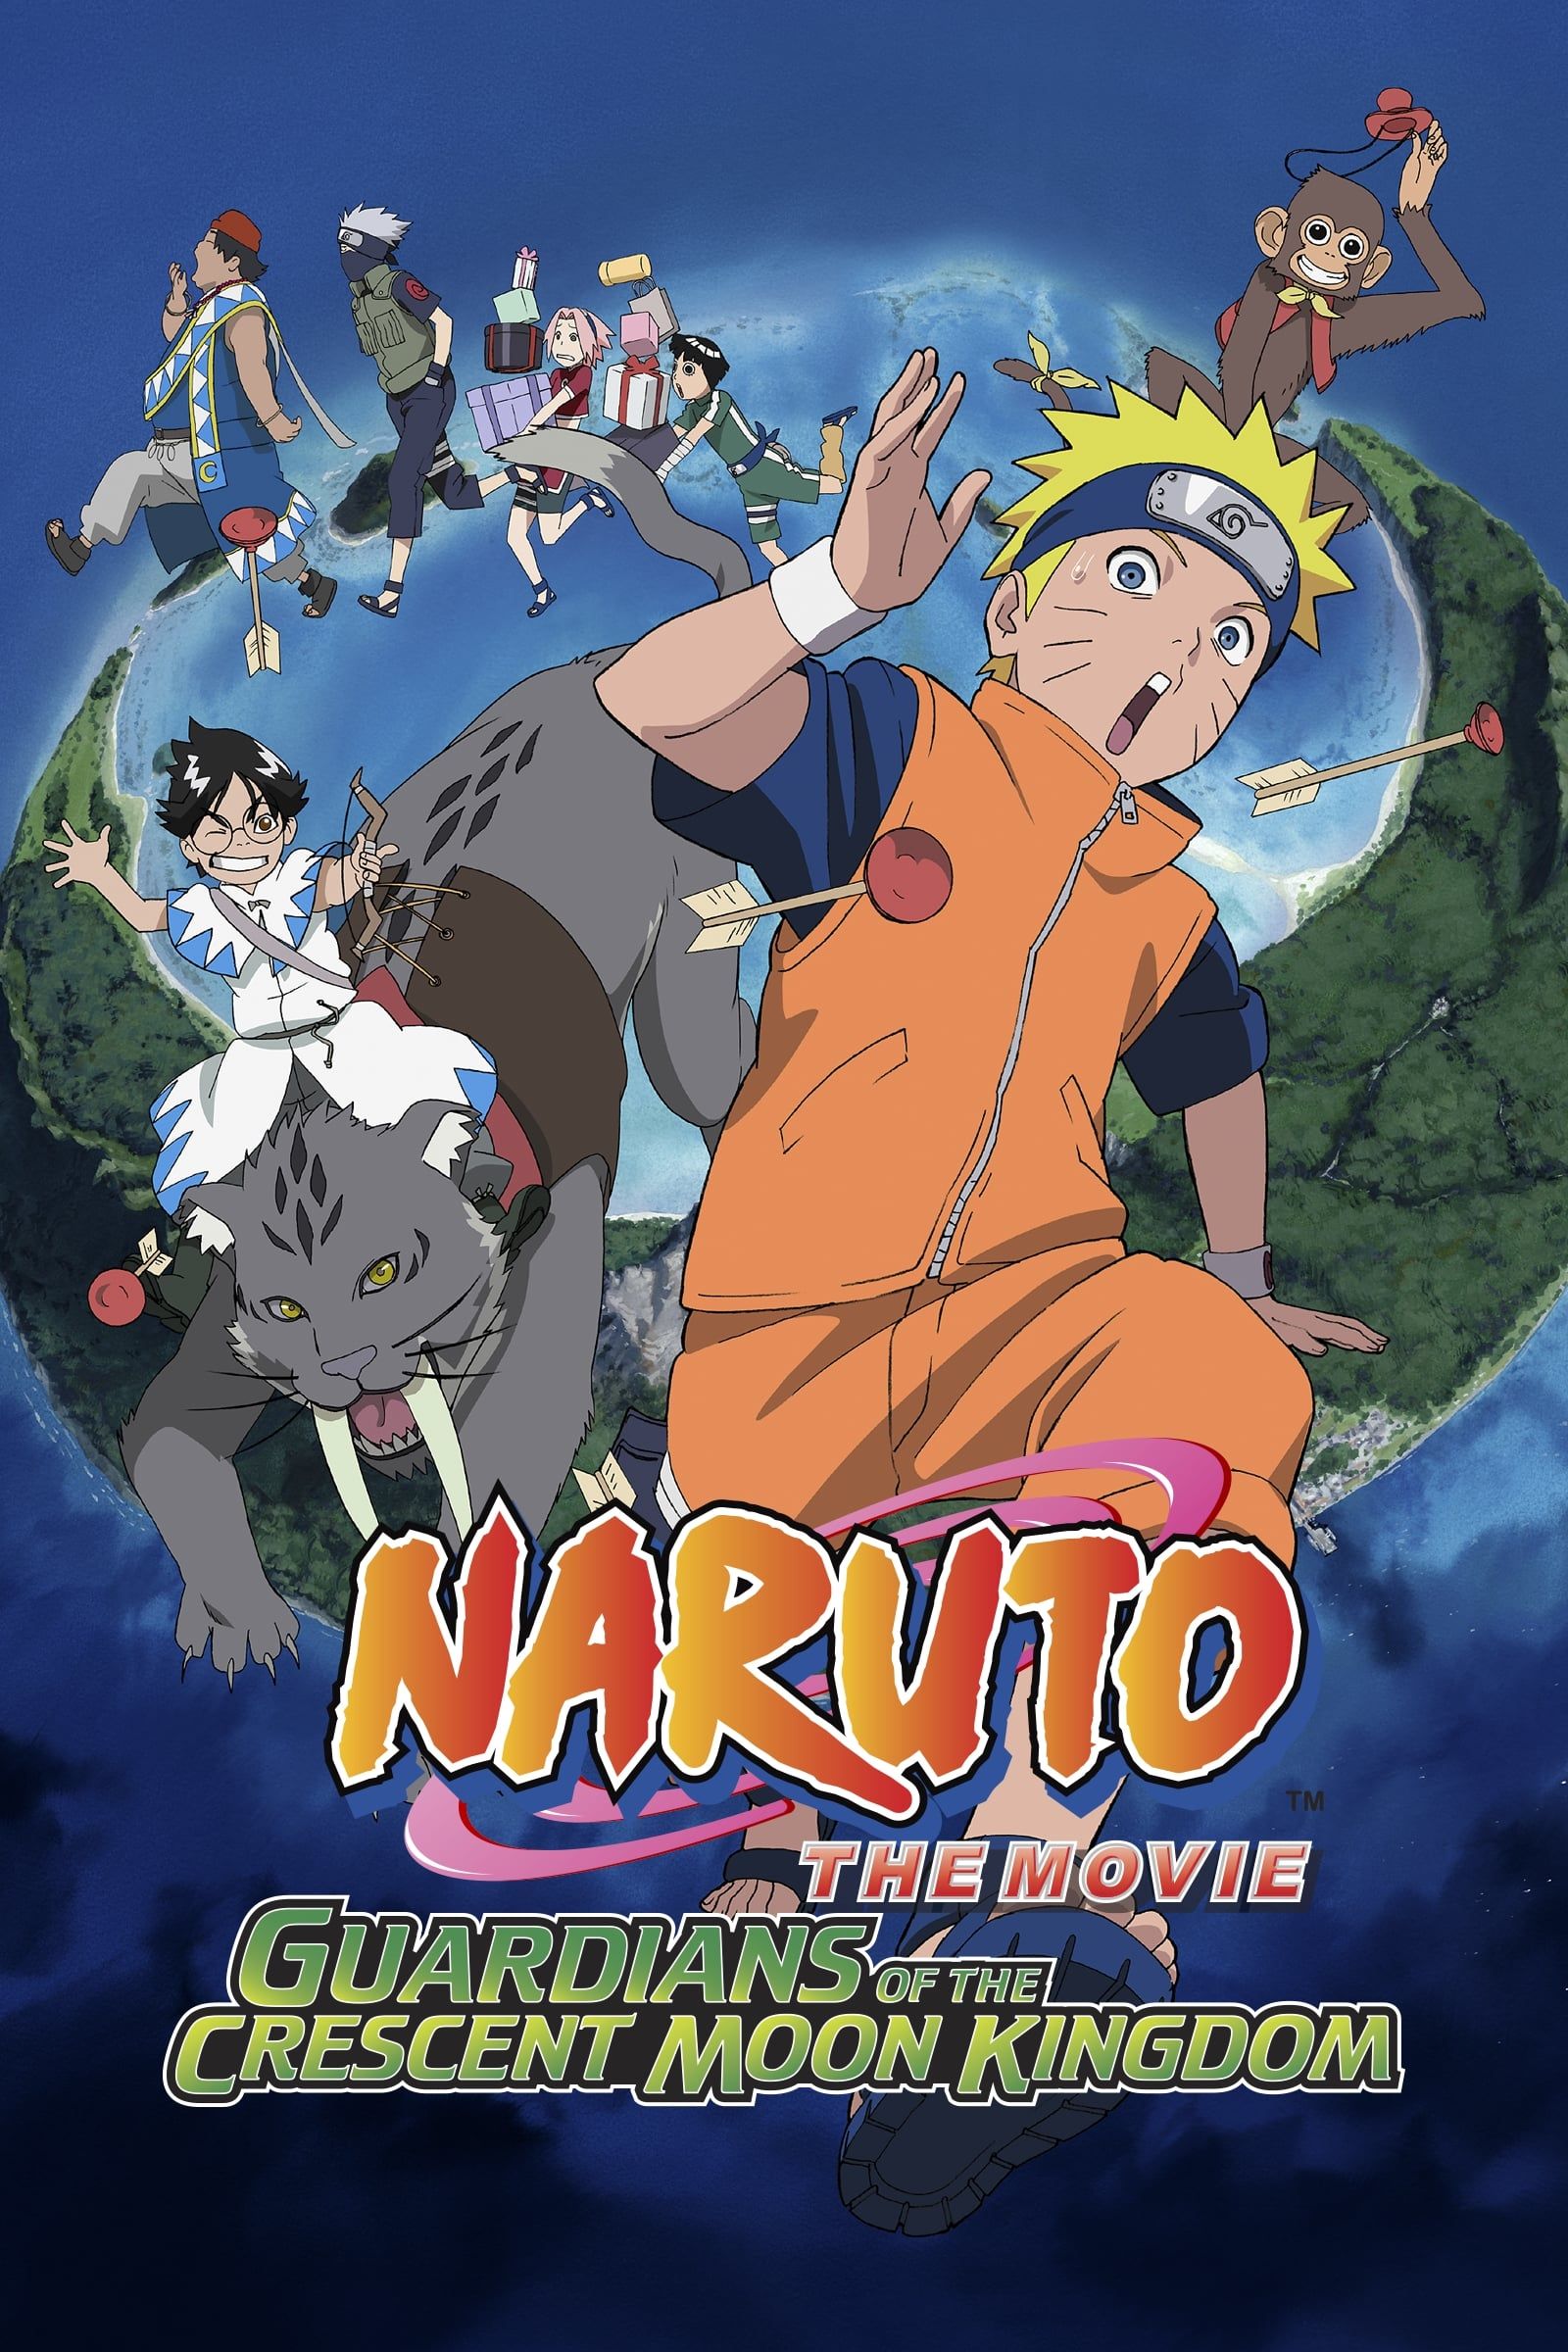 Naruto movies coming to Netflix UK 01/02/20!! : r/Naruto